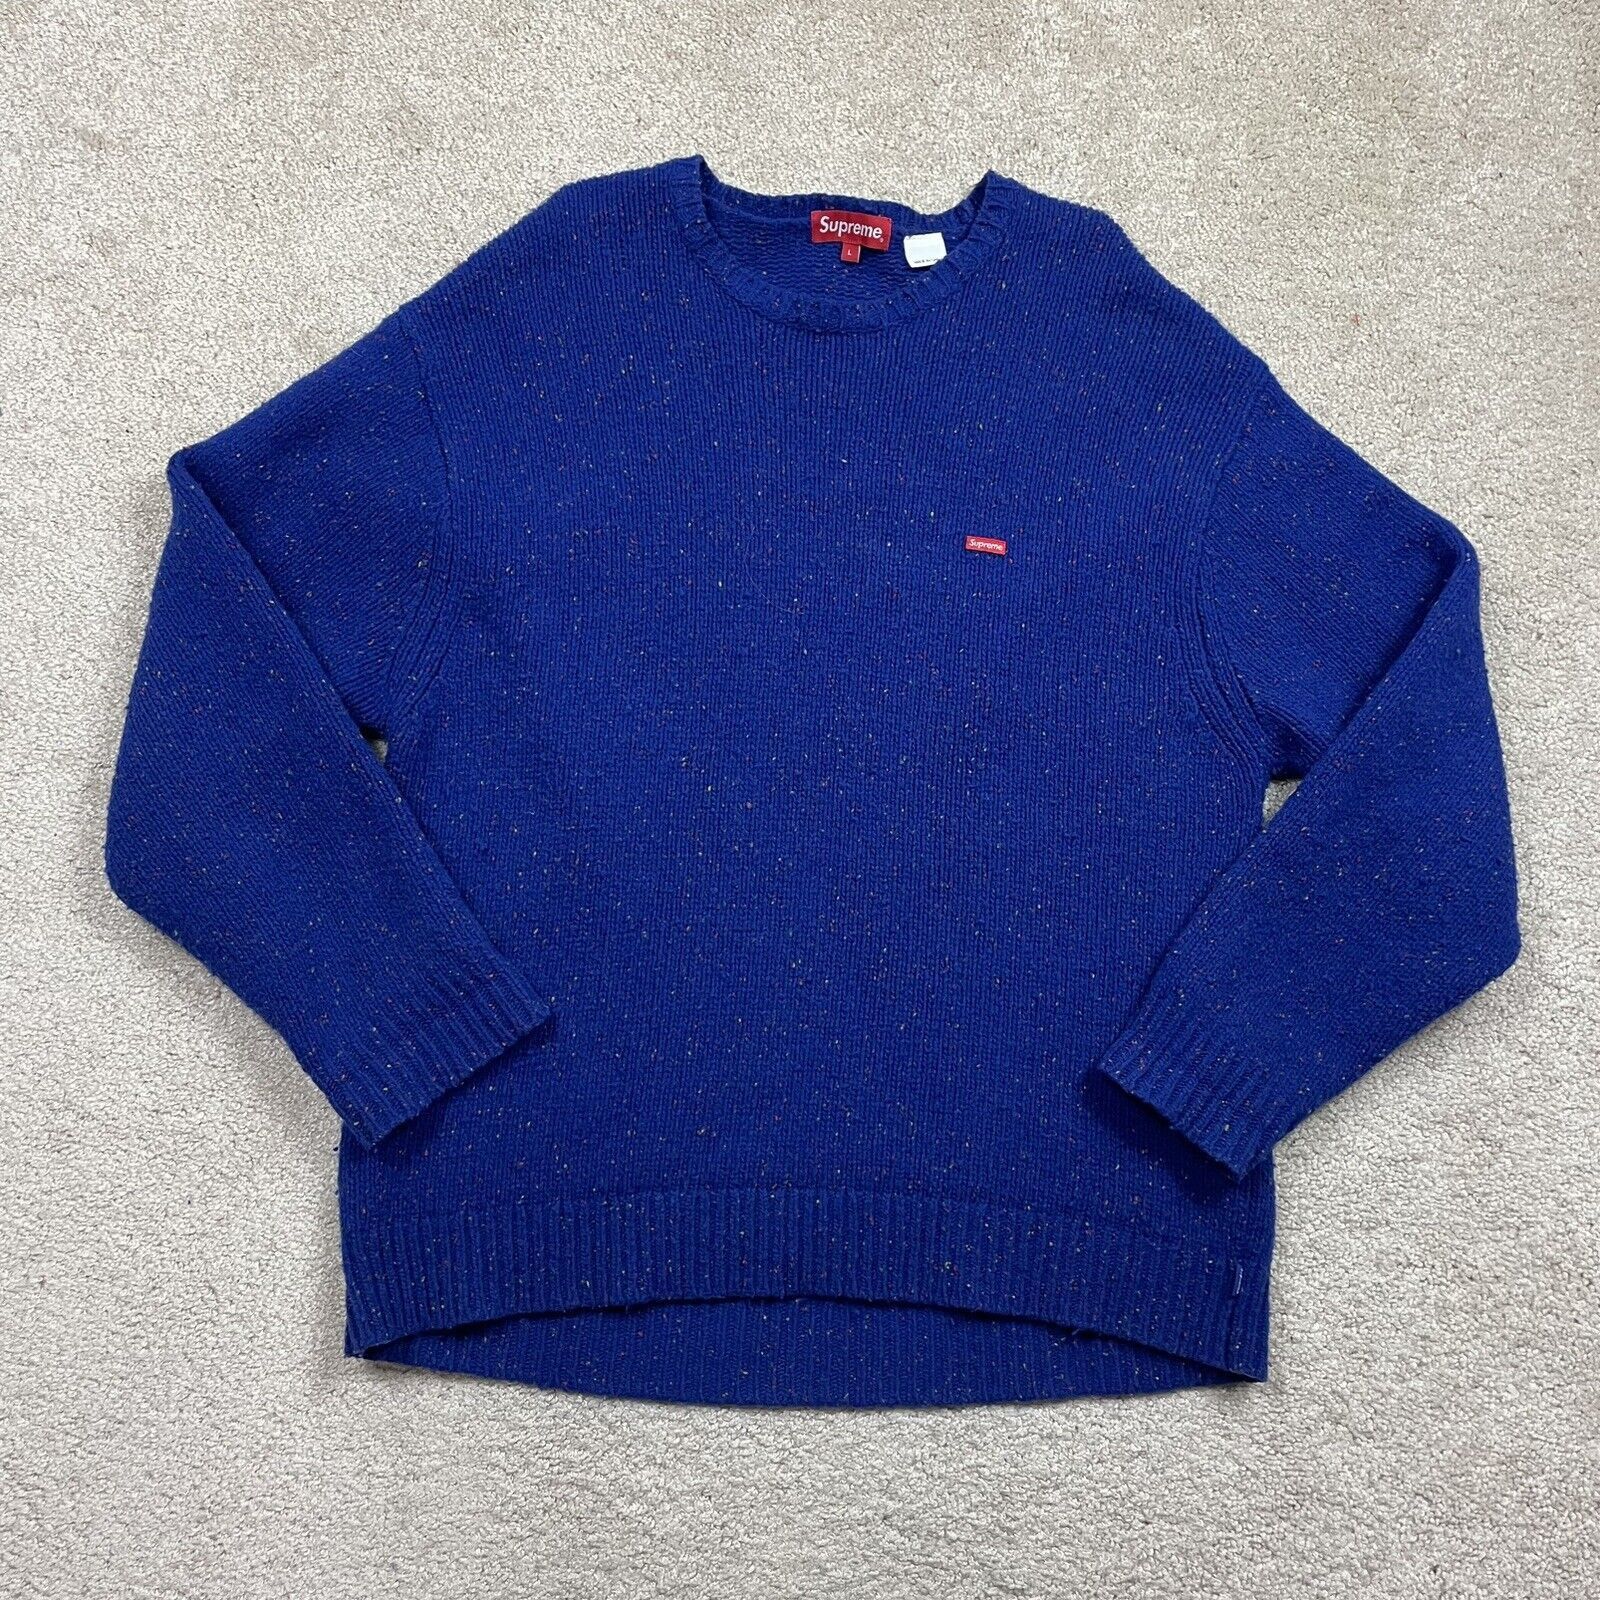 Supreme Supreme FW22 Small Box Logo Speckled Jumper Crewneck Sweater |  Grailed